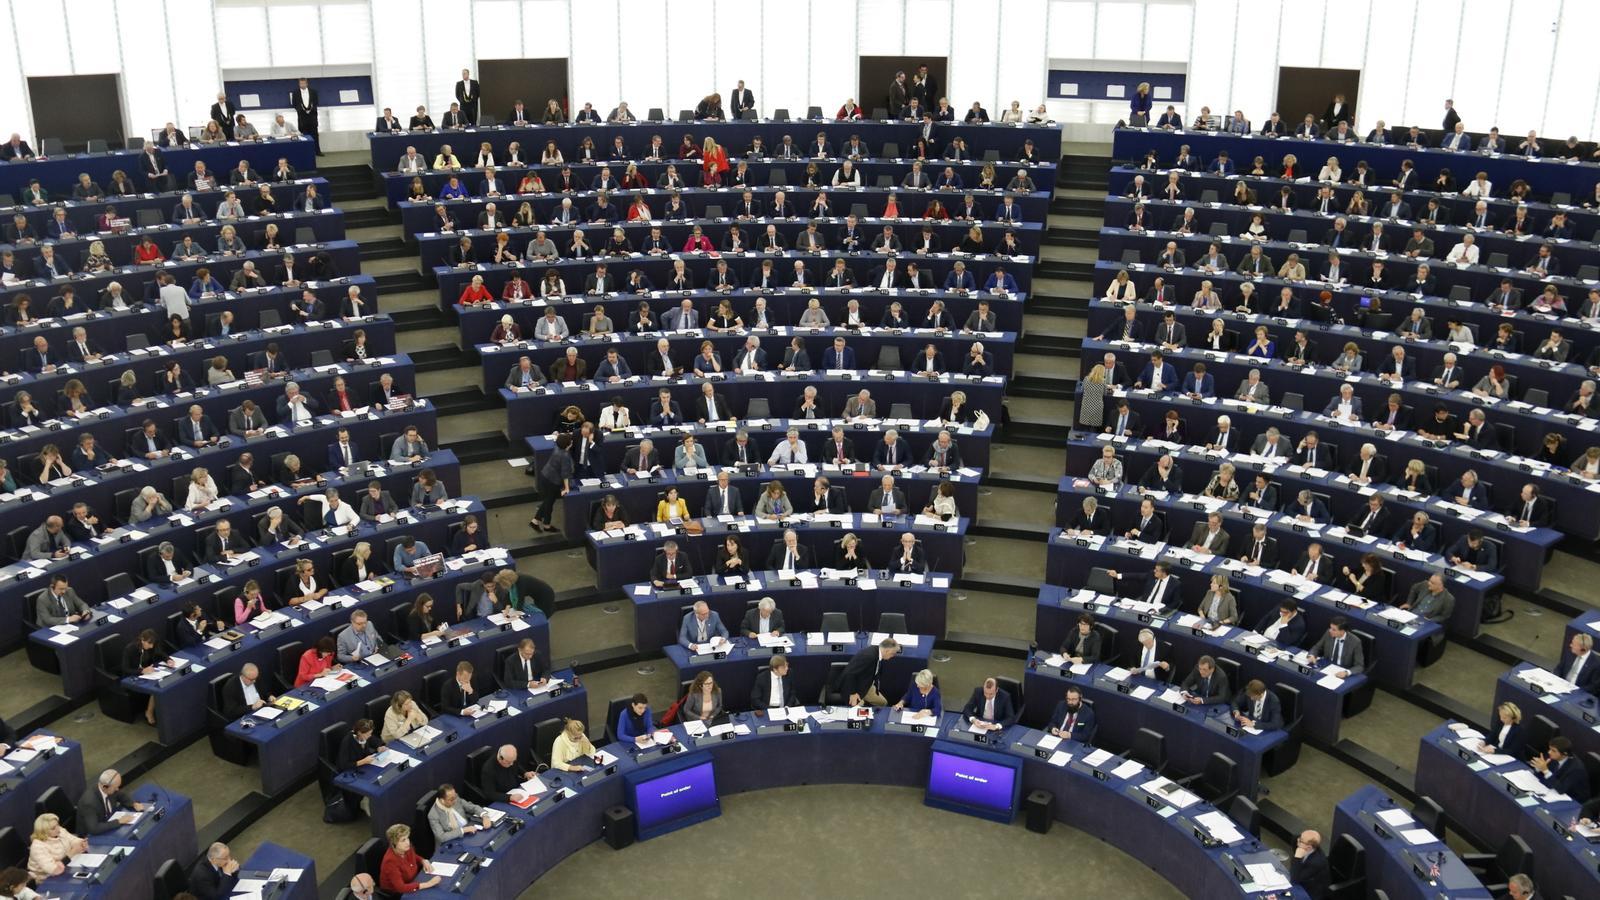 L'eurocambra afirma que la Junta Electoral decidirà si Junqueras es pot presentar a les europees